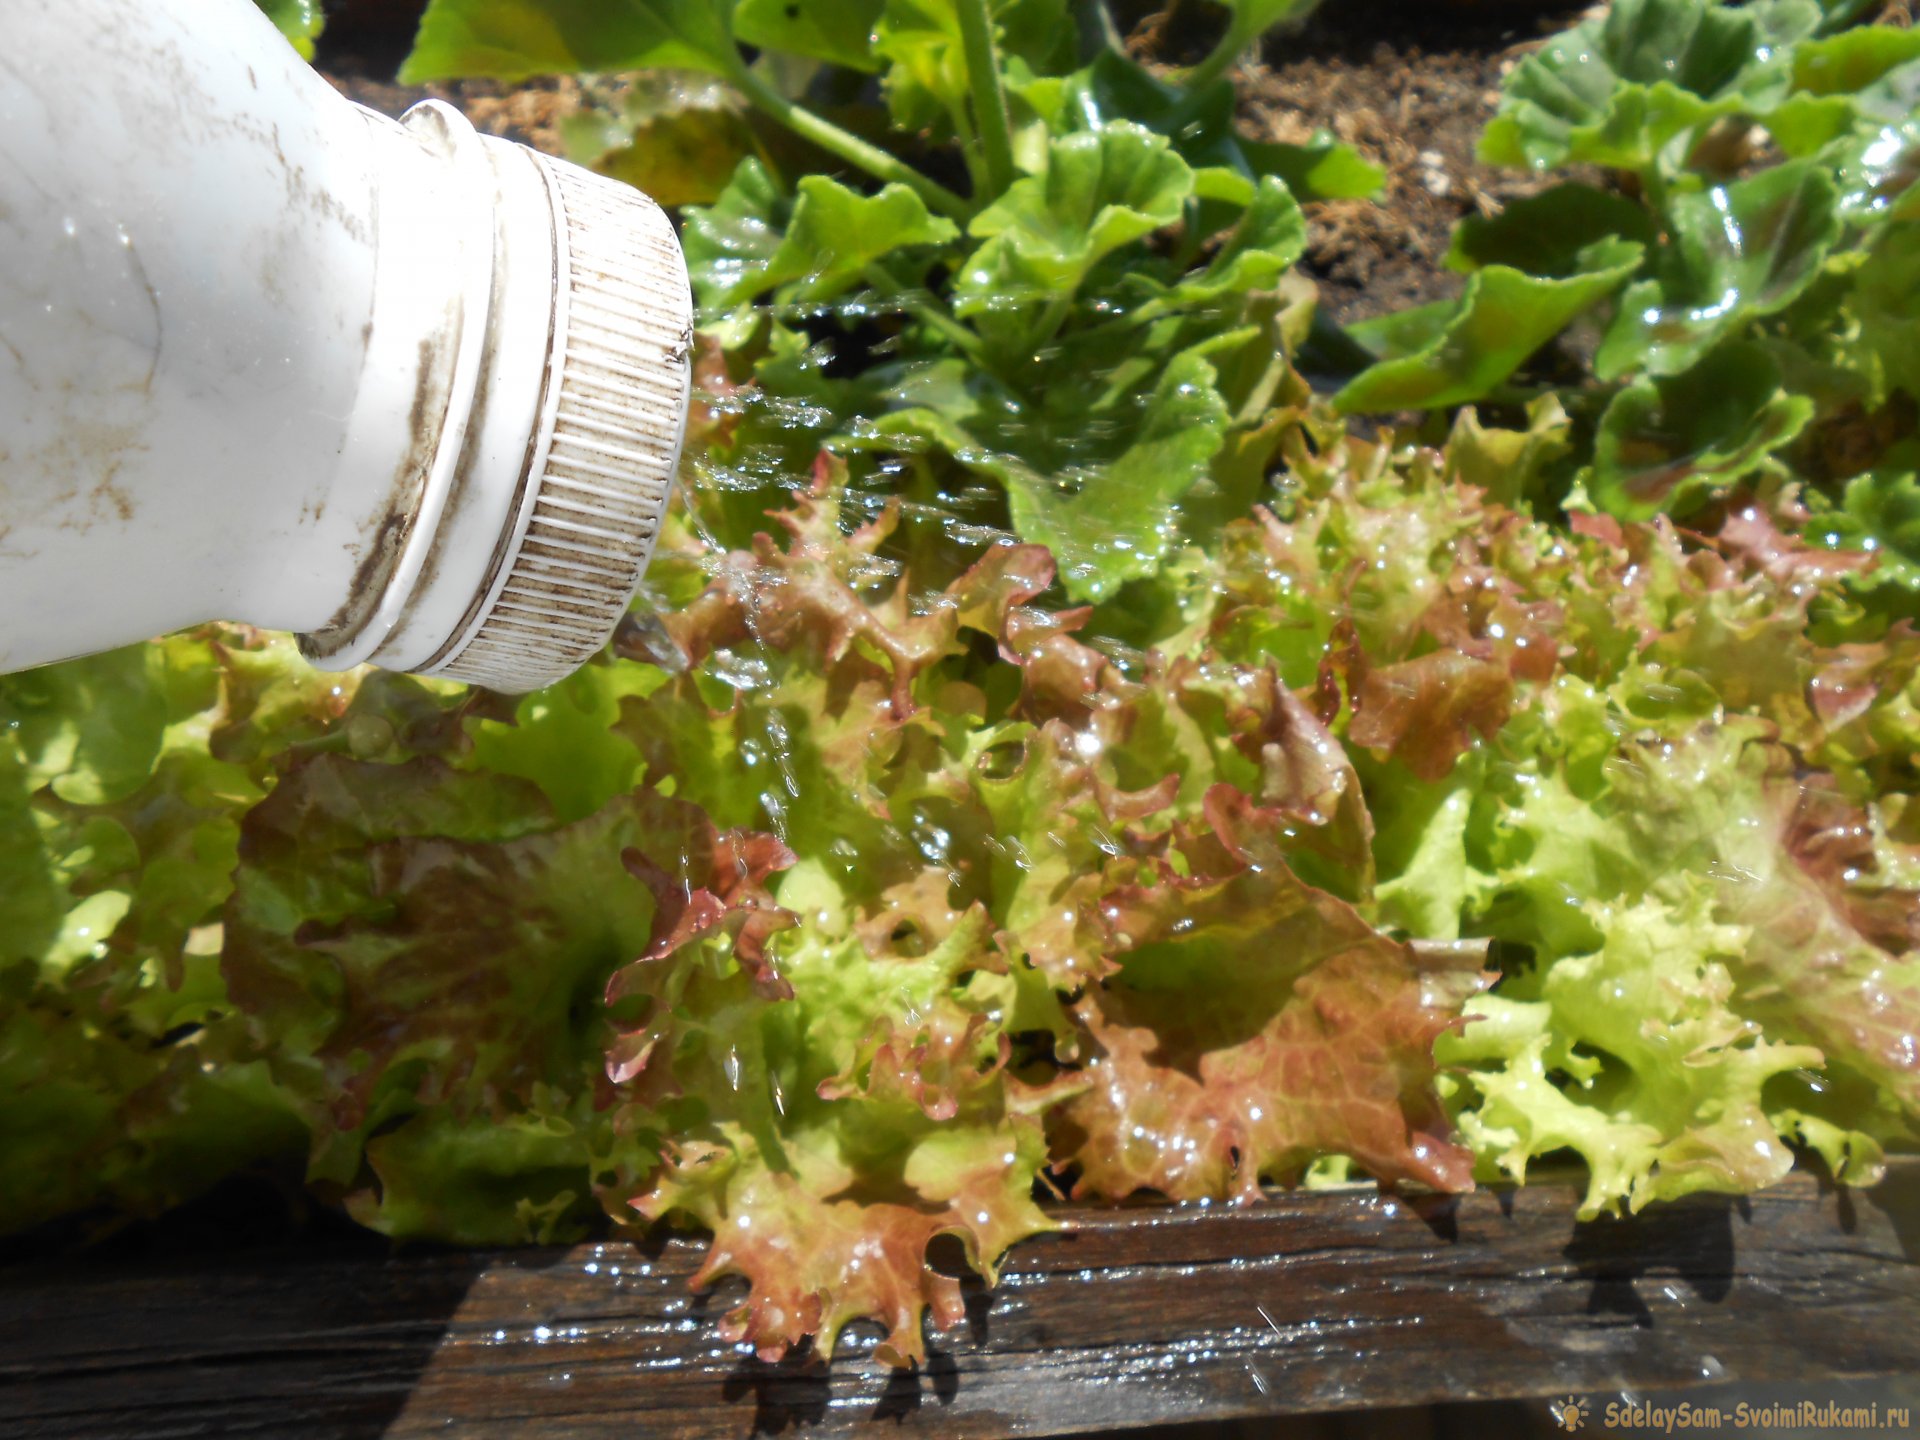 Выращивание листового салата в домашних условиях. Полный отчет от выбора семян до результата